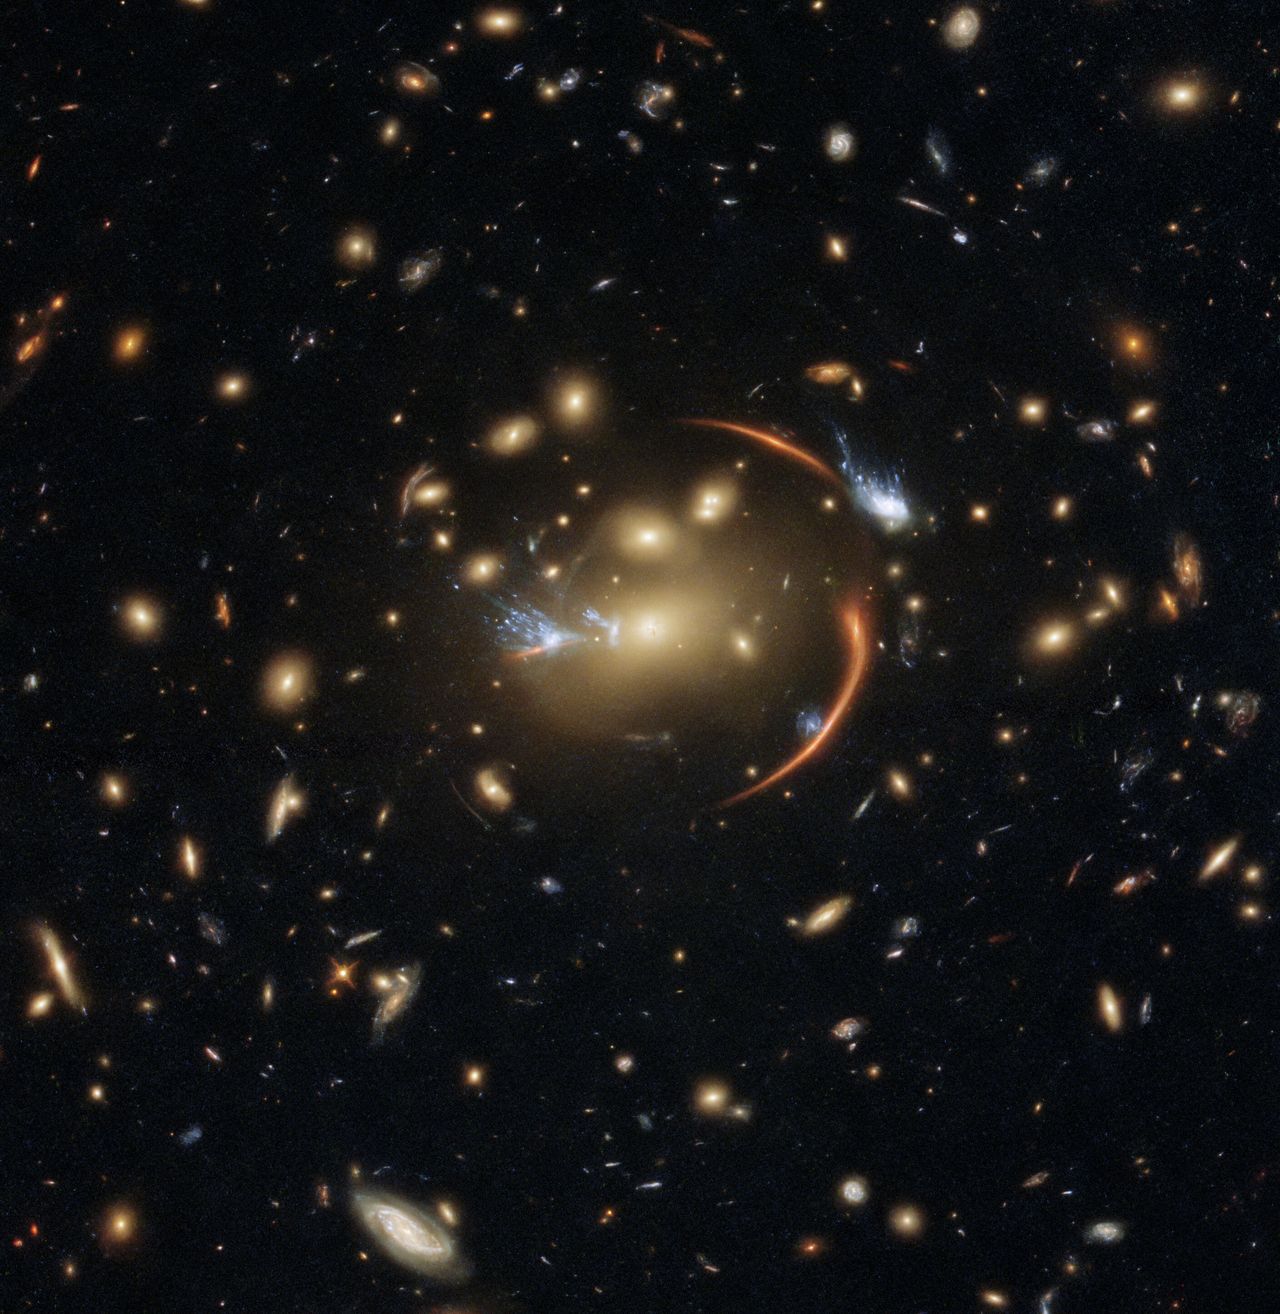 Znajduje się 10 miliardów lat świetlnych od nas. Teleskop Hubble’a ujął odległą galaktykę